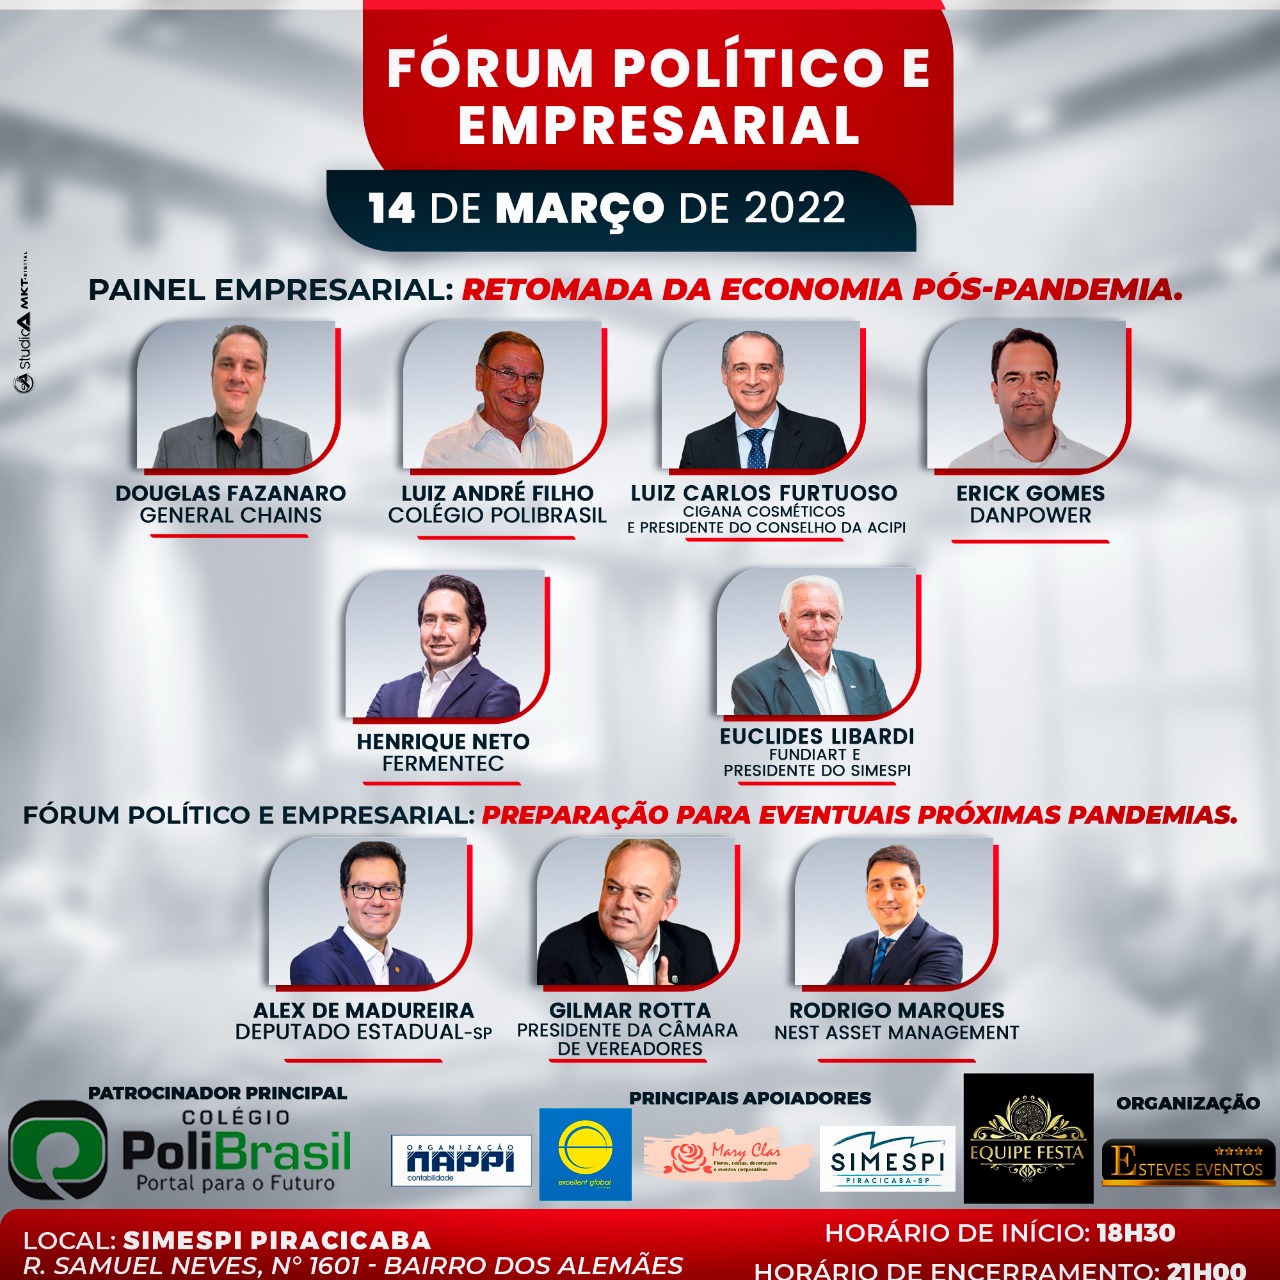 Fórum Político e Empresarial acontecerá no Simespi – dia 14 de março